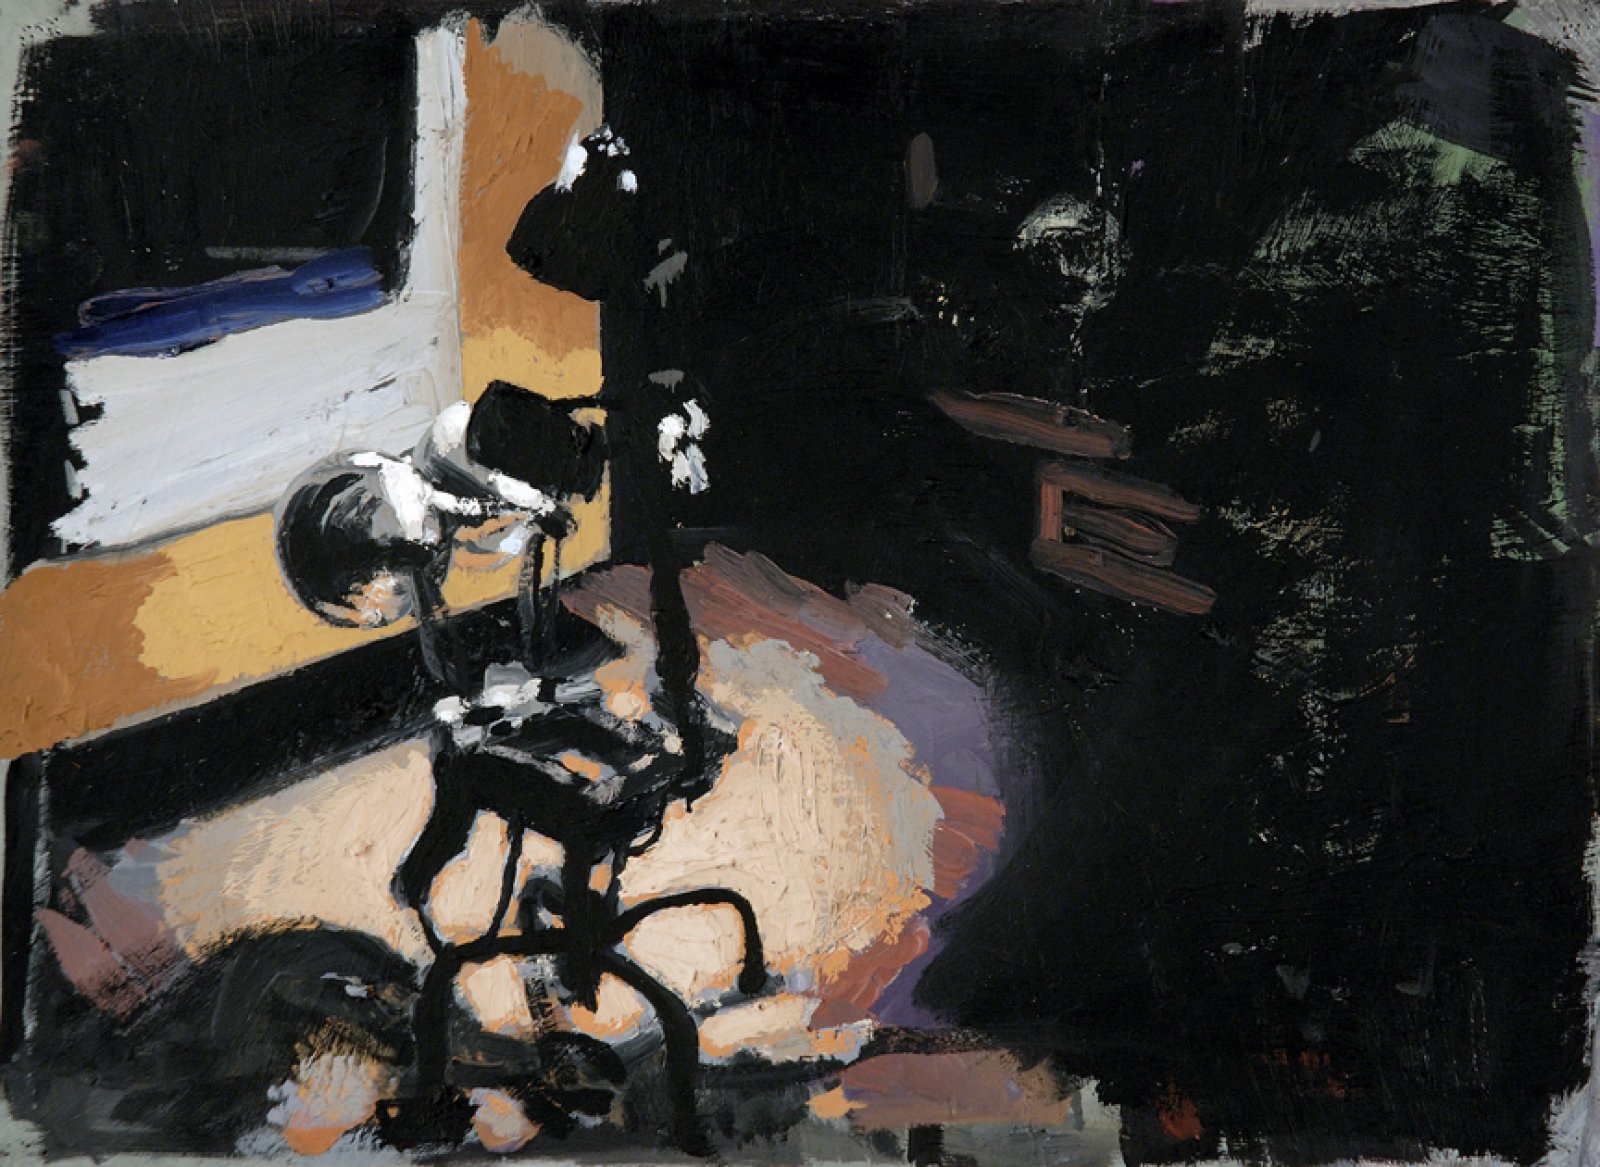 Damian Moppett, Lamps, 2006, oil on paper, 19 x 24 in. (48 x 61 cm) by Damian Moppett